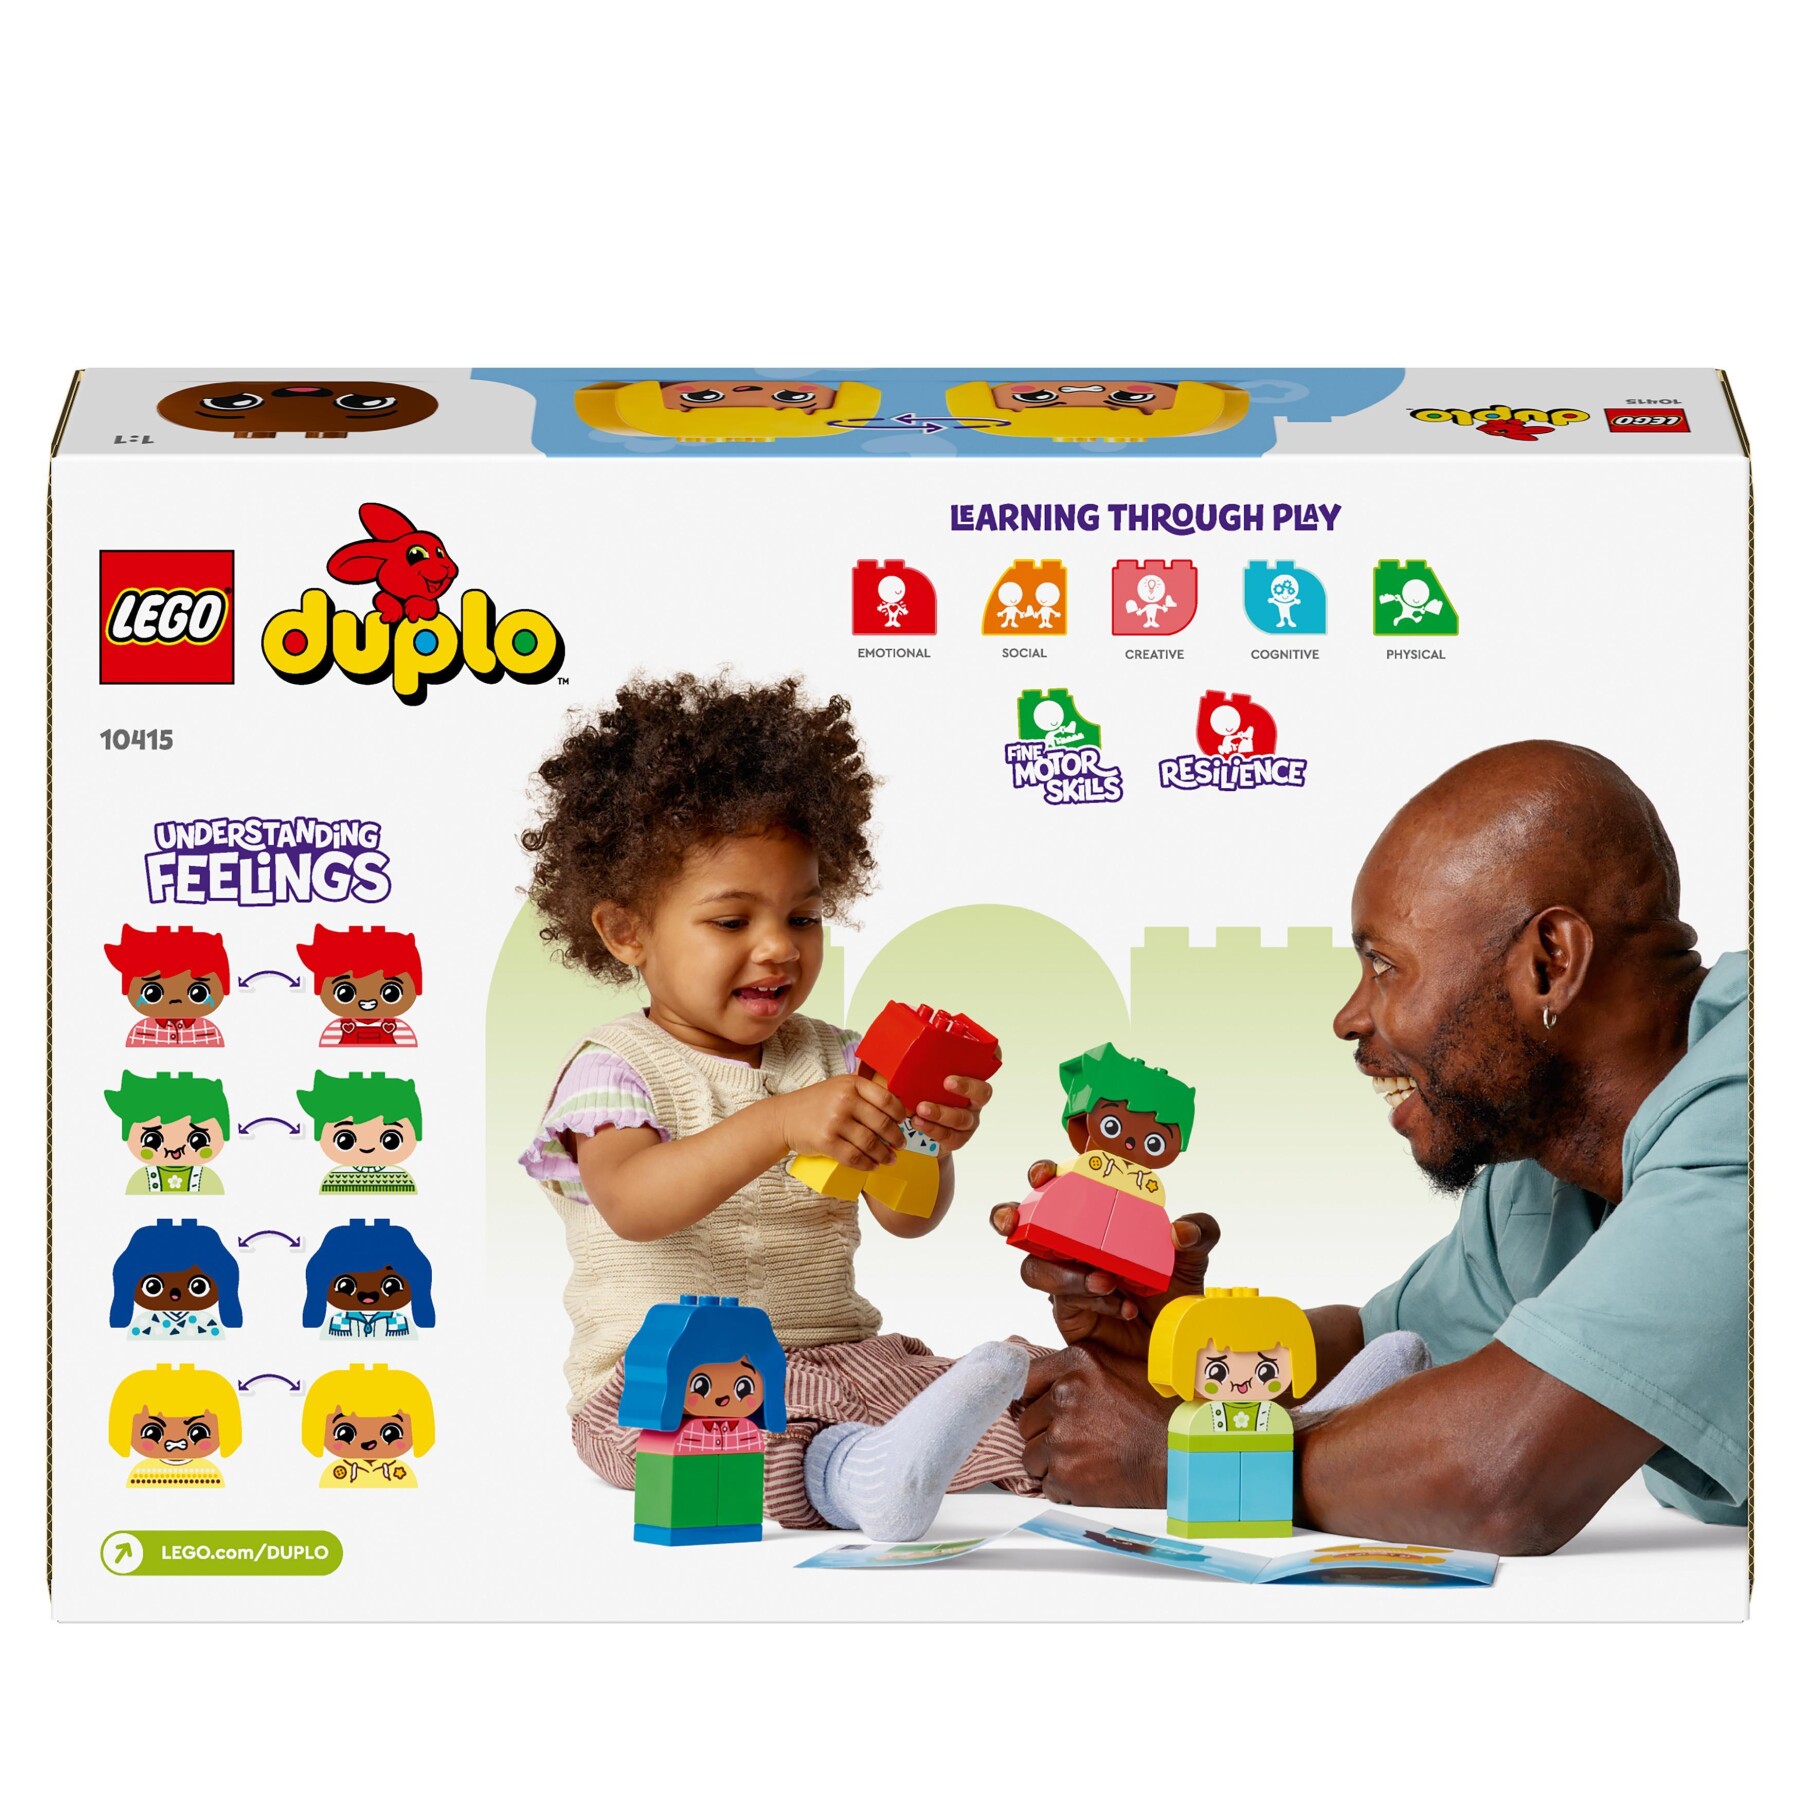 Lego duplo 10415 forti sentimenti ed emozioni, giochi per bambini da 1.5 anni impilabili con 23 mattoncini e 4 personaggi - LEGO DUPLO